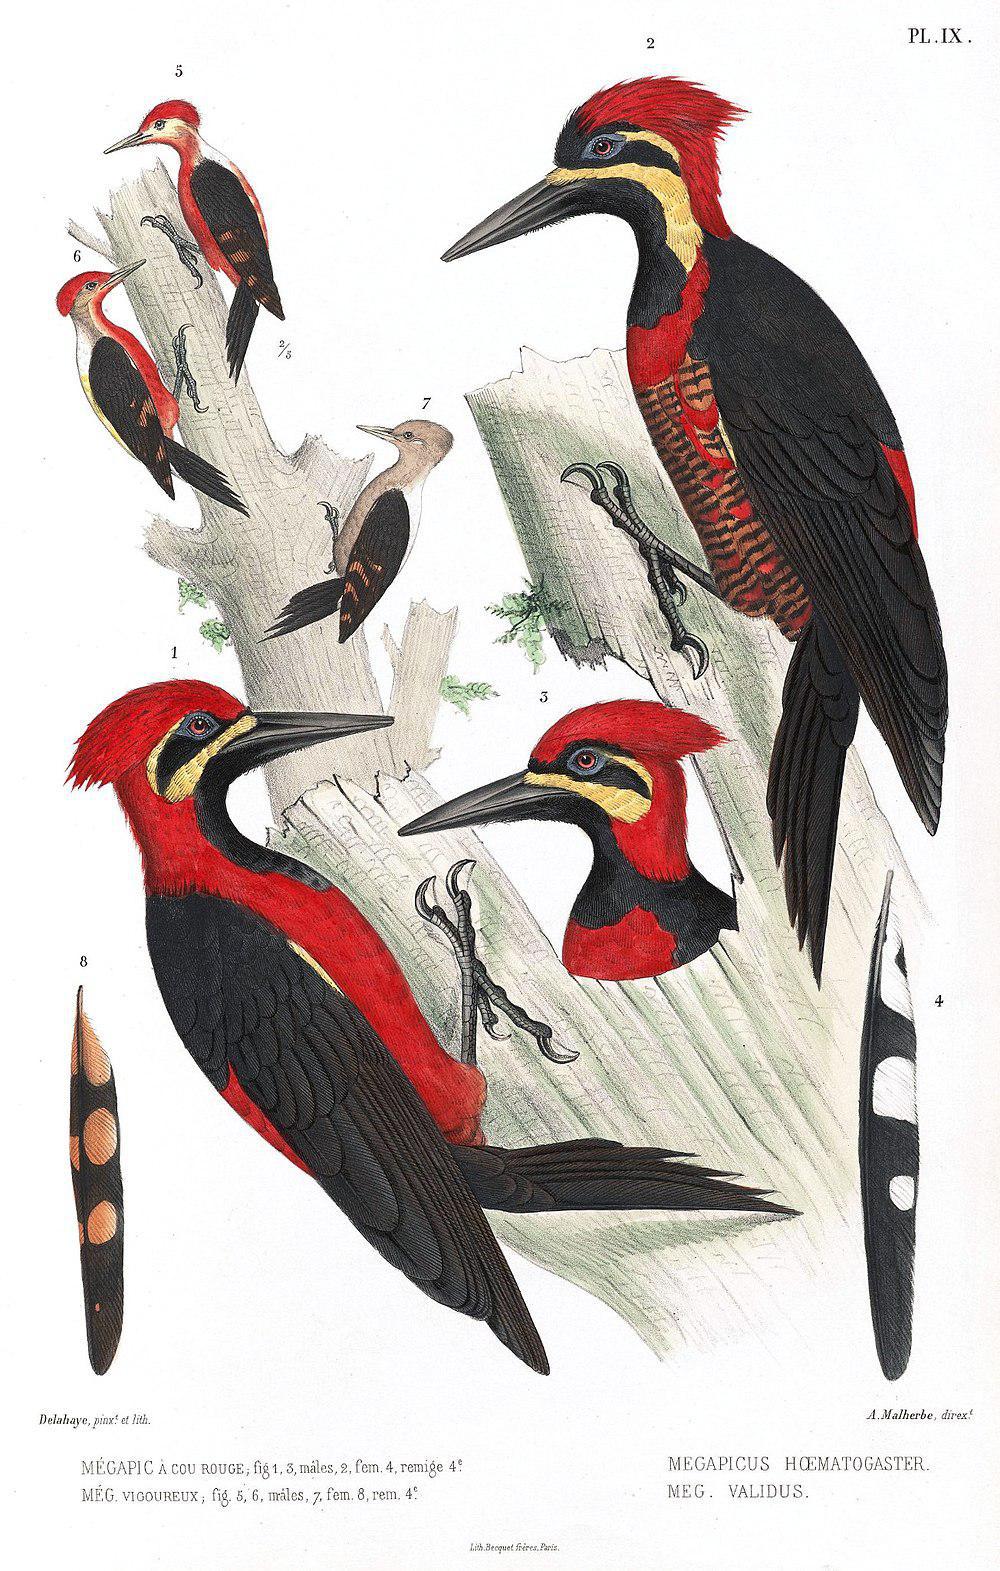 朱腹啄木鸟 / Crimson-bellied Woodpecker / Campephilus haematogaster